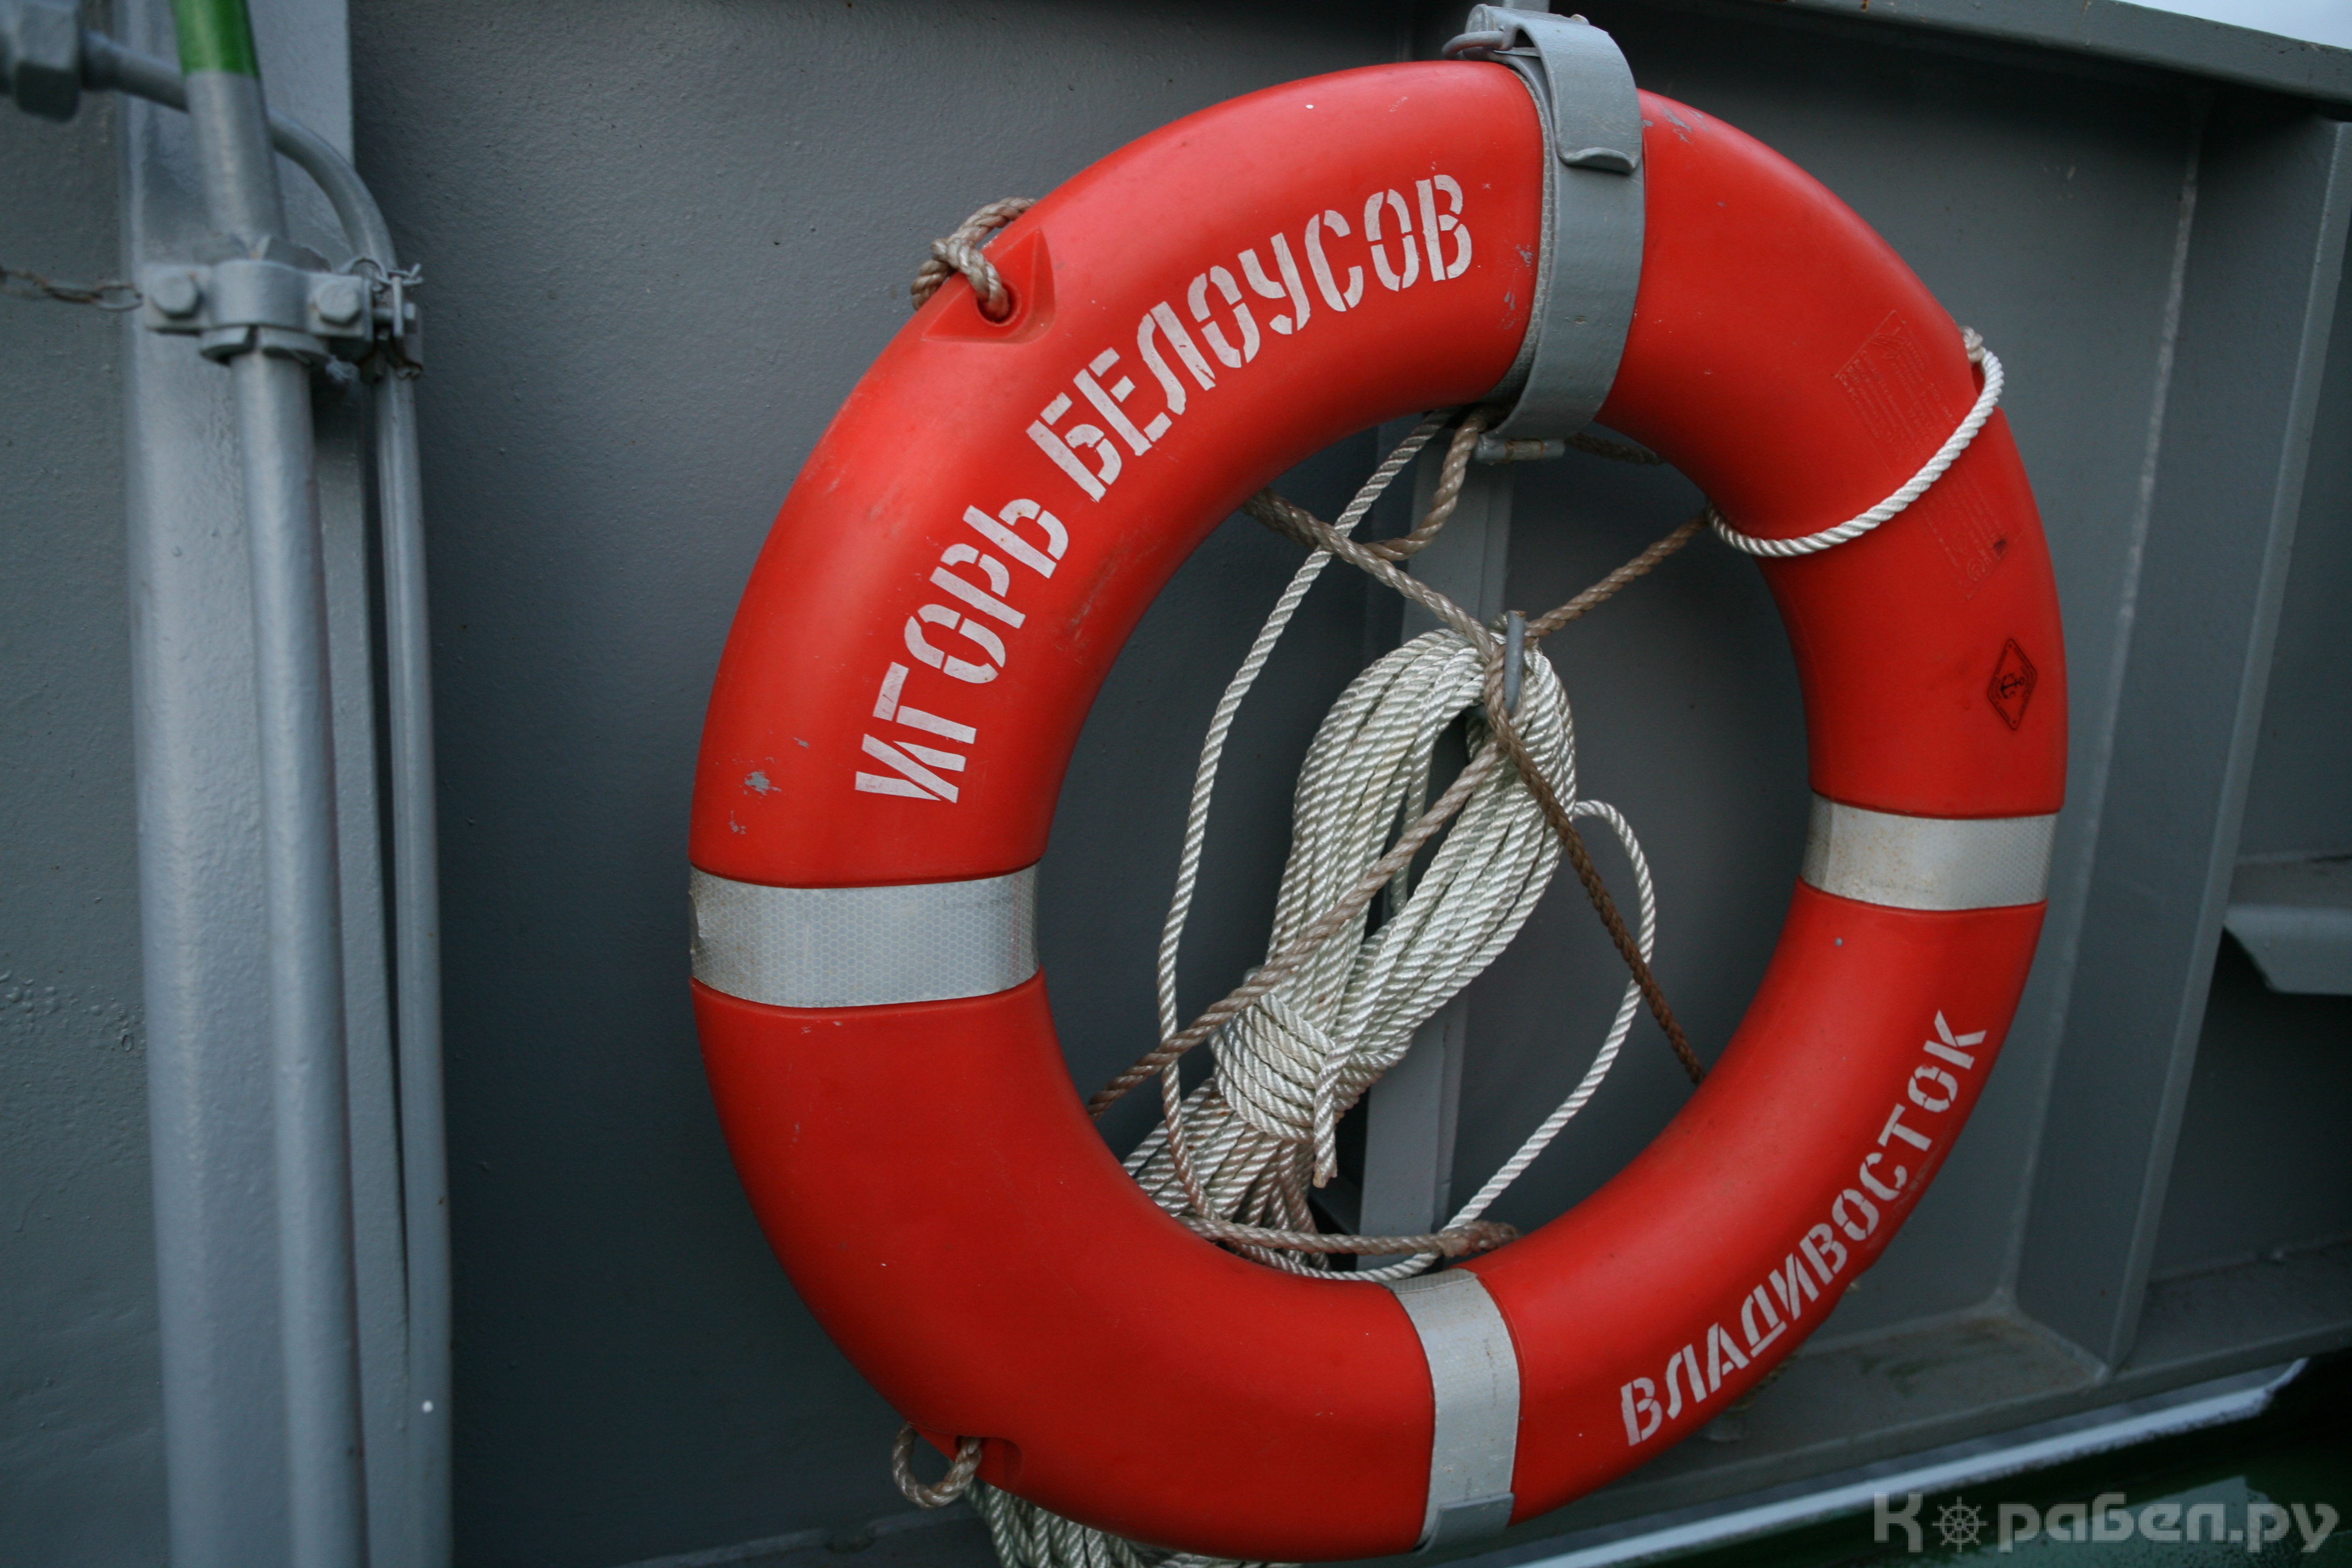 Церемония поднятия флага на спасательном судне "Игорь Белоусов"